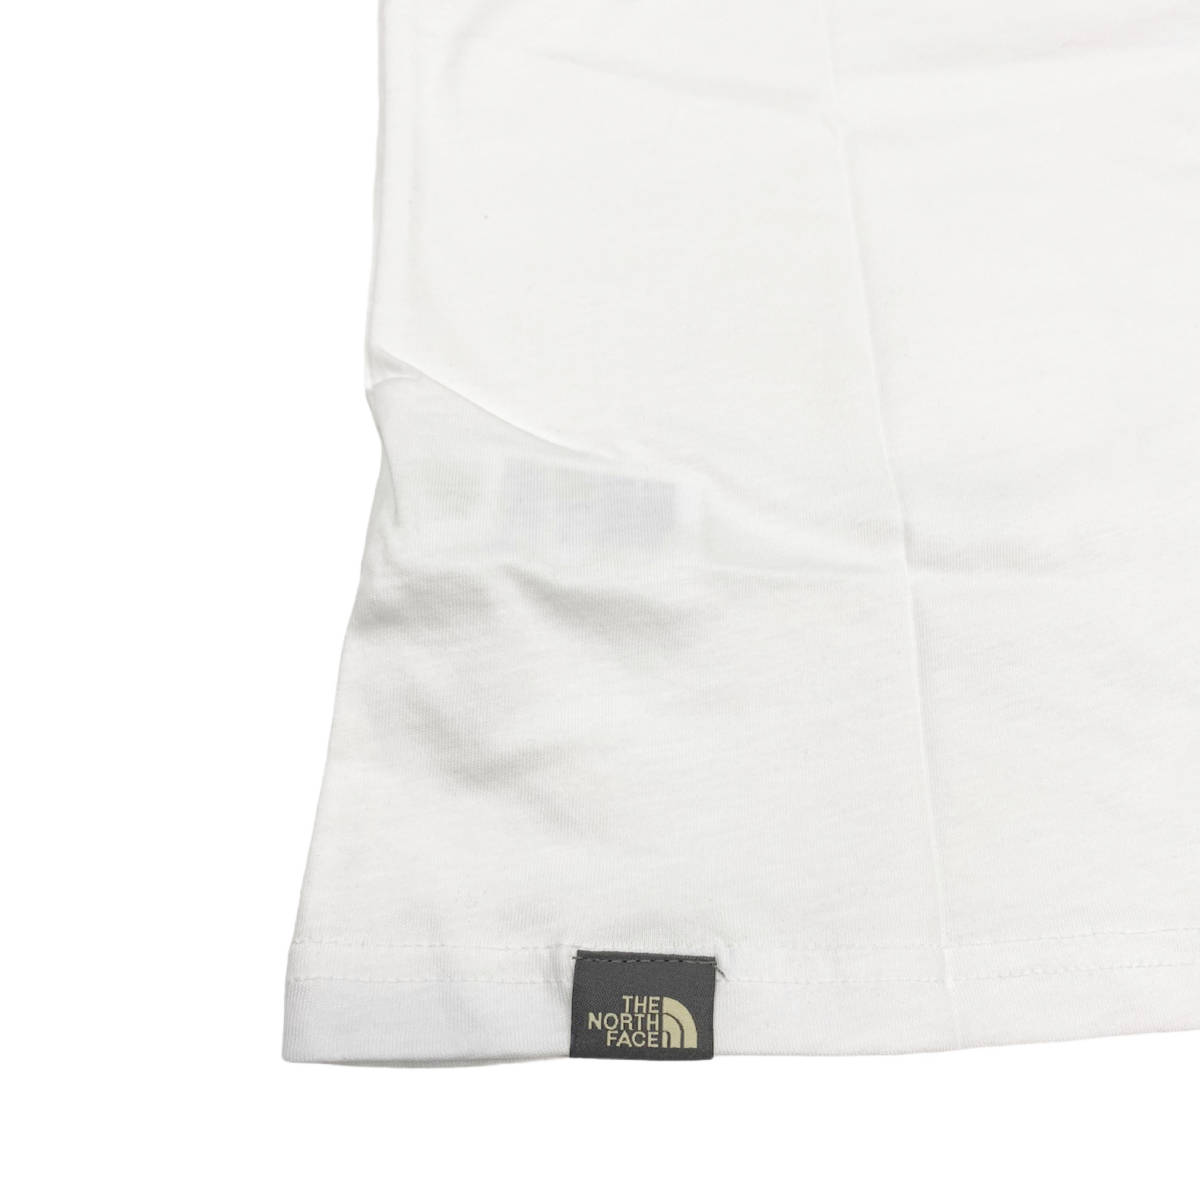 ノースフェイス Tシャツ ボックス 半袖 グラフィック バックロゴ トップス ホワイト 2XLサイズ NF0A3S3R THE NORTH FACE GRAPHIC TEE 新品